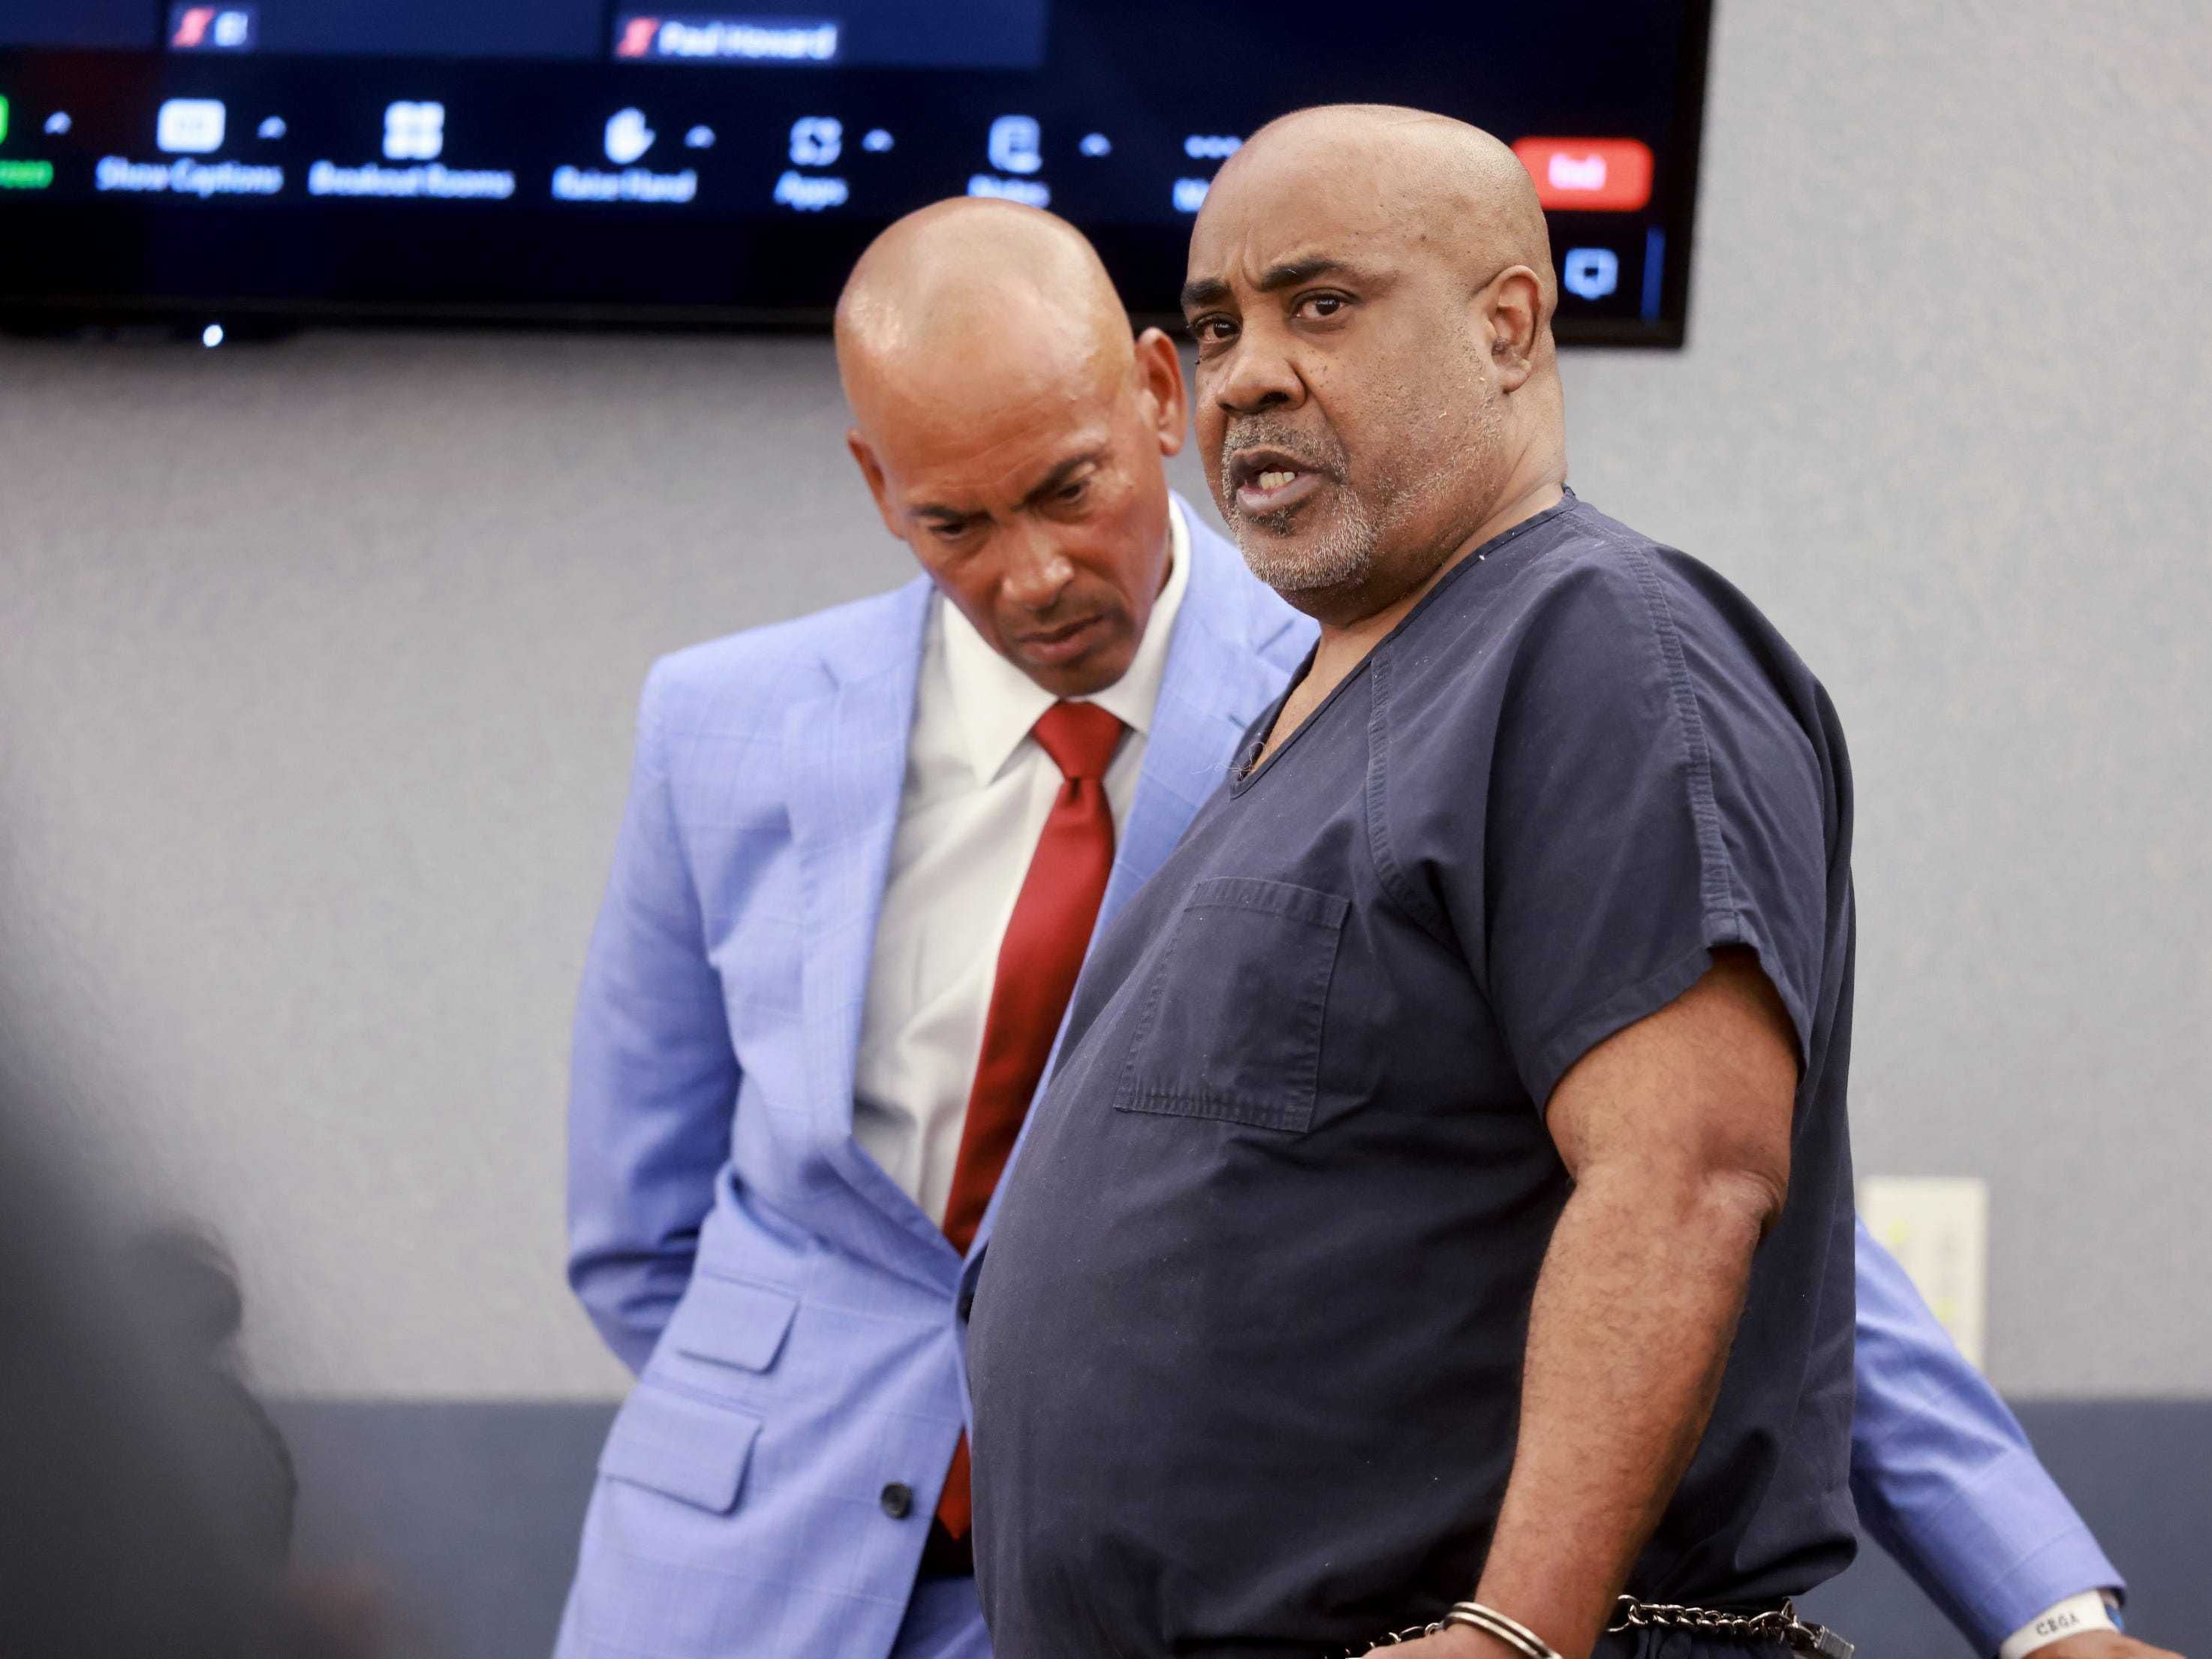 Judge denies release of ex-gang leader ahead of trial in Tupac Shakur killing